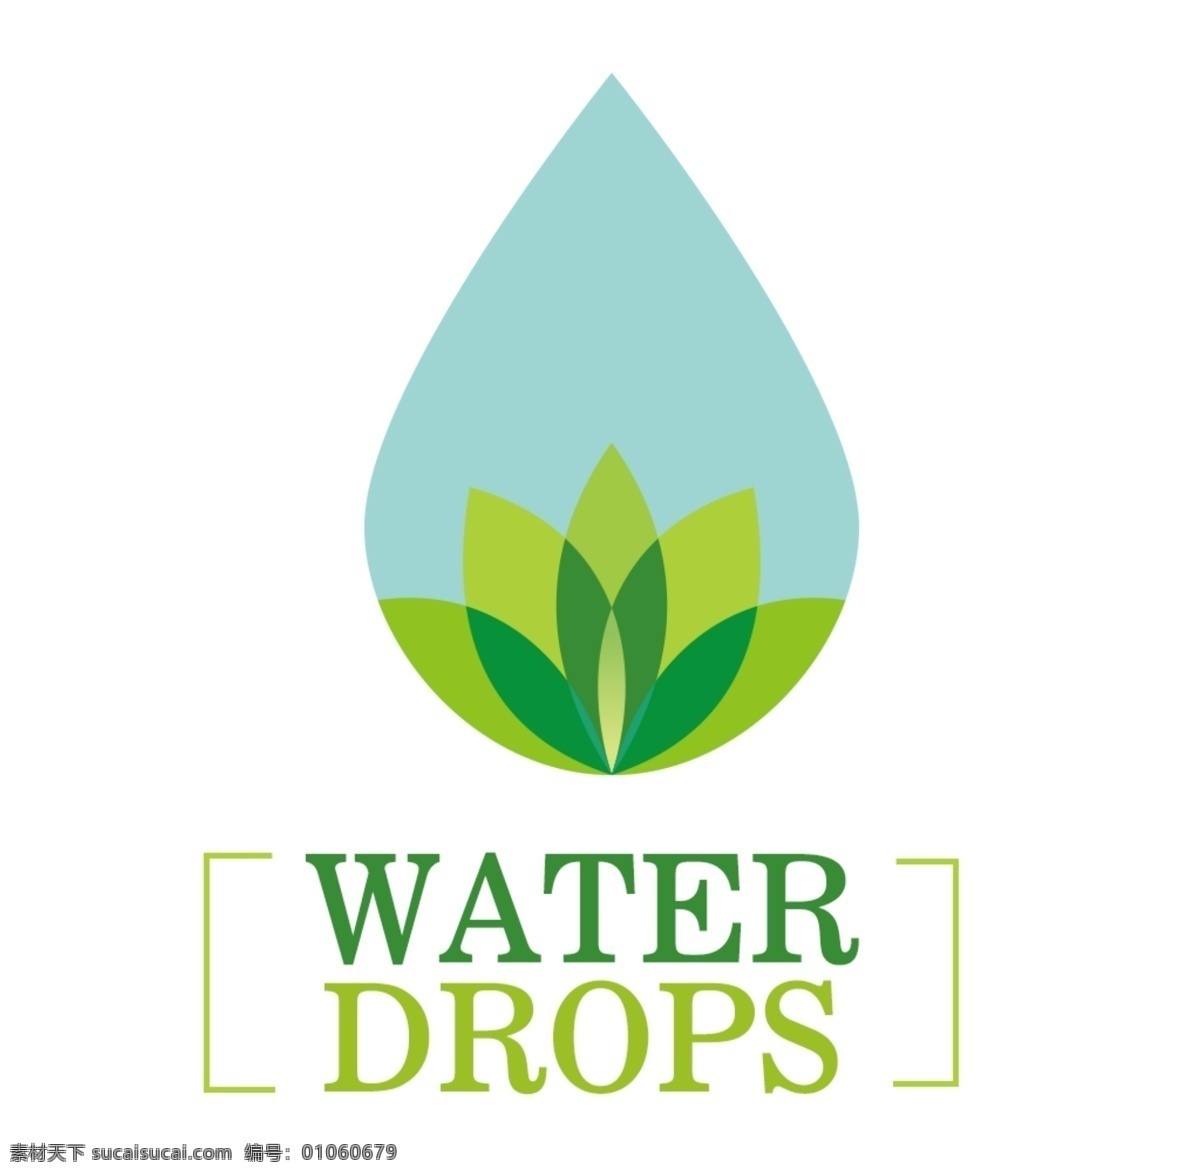 2018 环保 蓝色 绿色 水滴 配 图 印刷 logo 配图